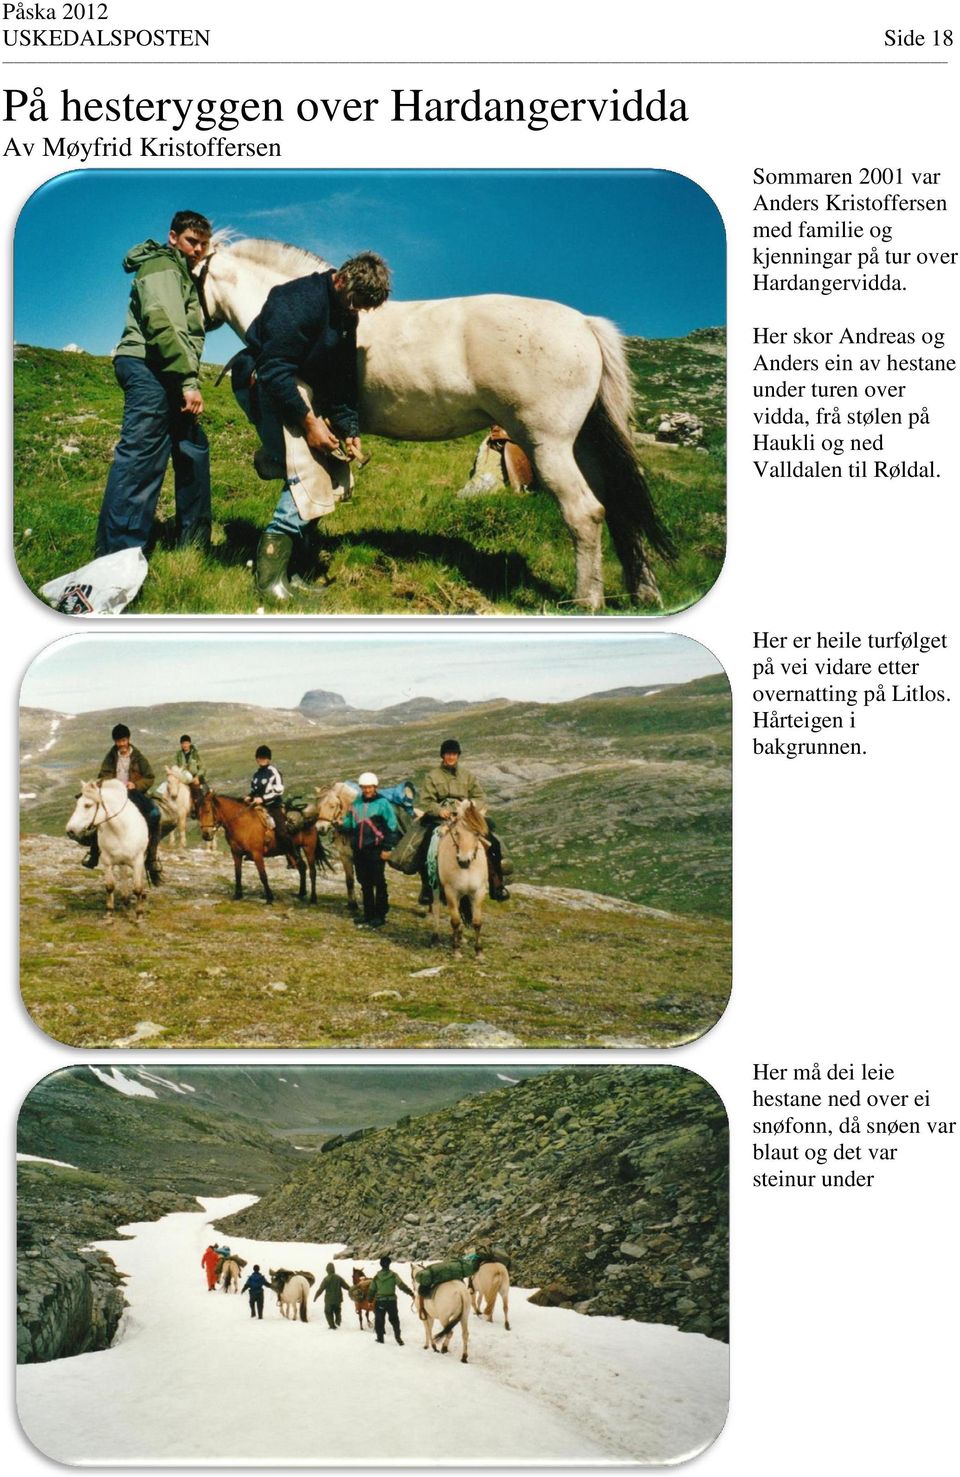 Her skor Andreas og Anders ein av hestane under turen over vidda, frå stølen på Haukli og ned Valldalen til Røldal.